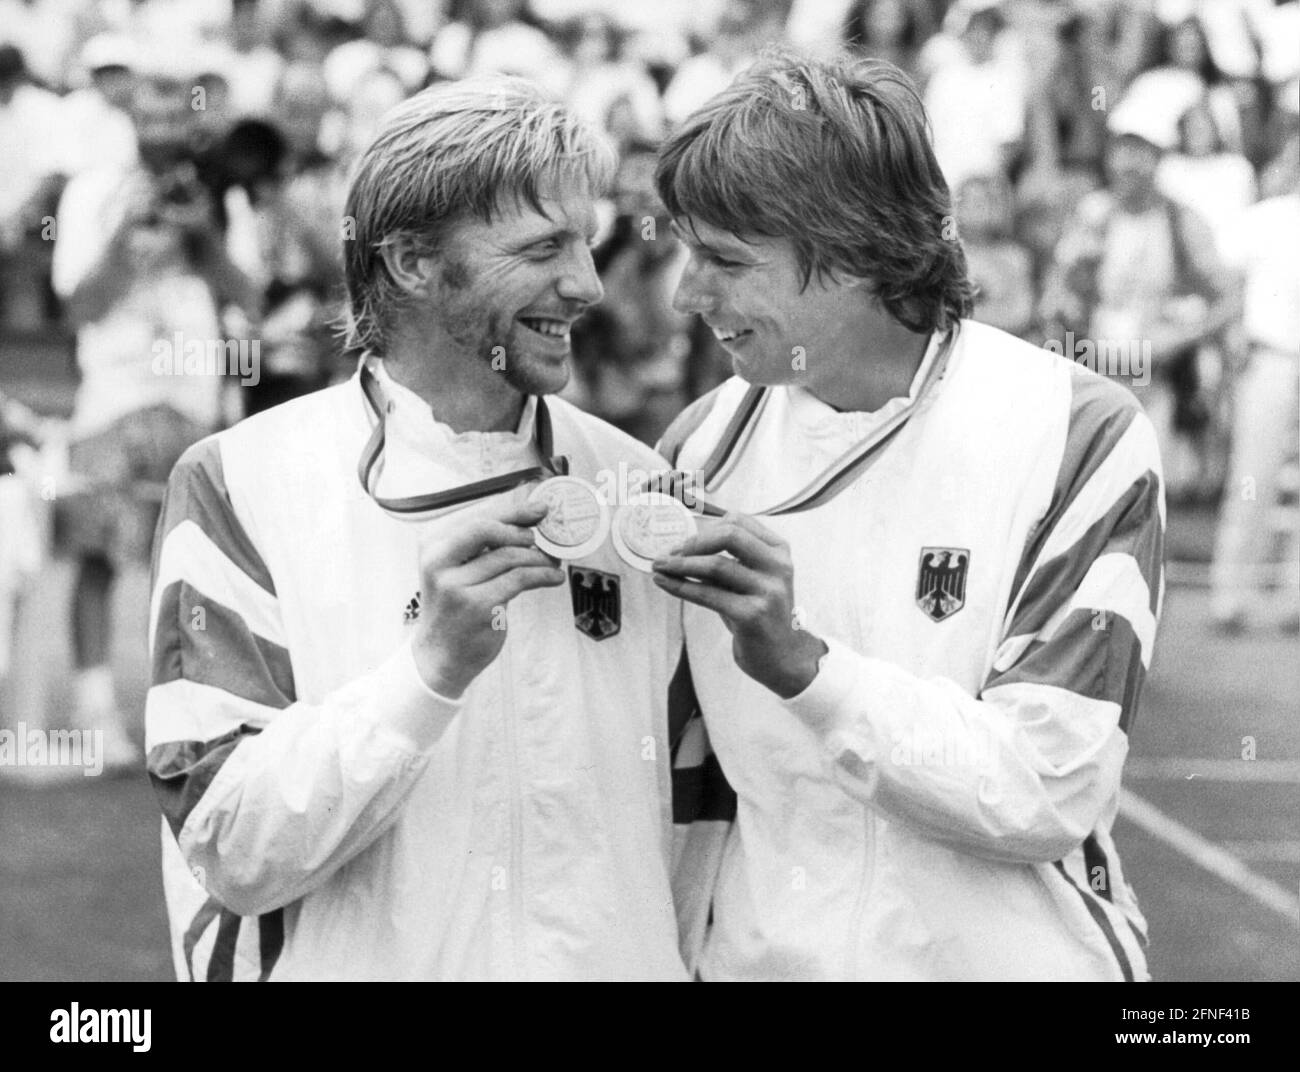 Les joueurs de tennis allemands Boris Becker (l.) et Michael Stich célèbrent la victoire de la médaille d'or en double masculin aux Jeux Olympiques de Barcelone en 1992. [traduction automatique] Banque D'Images